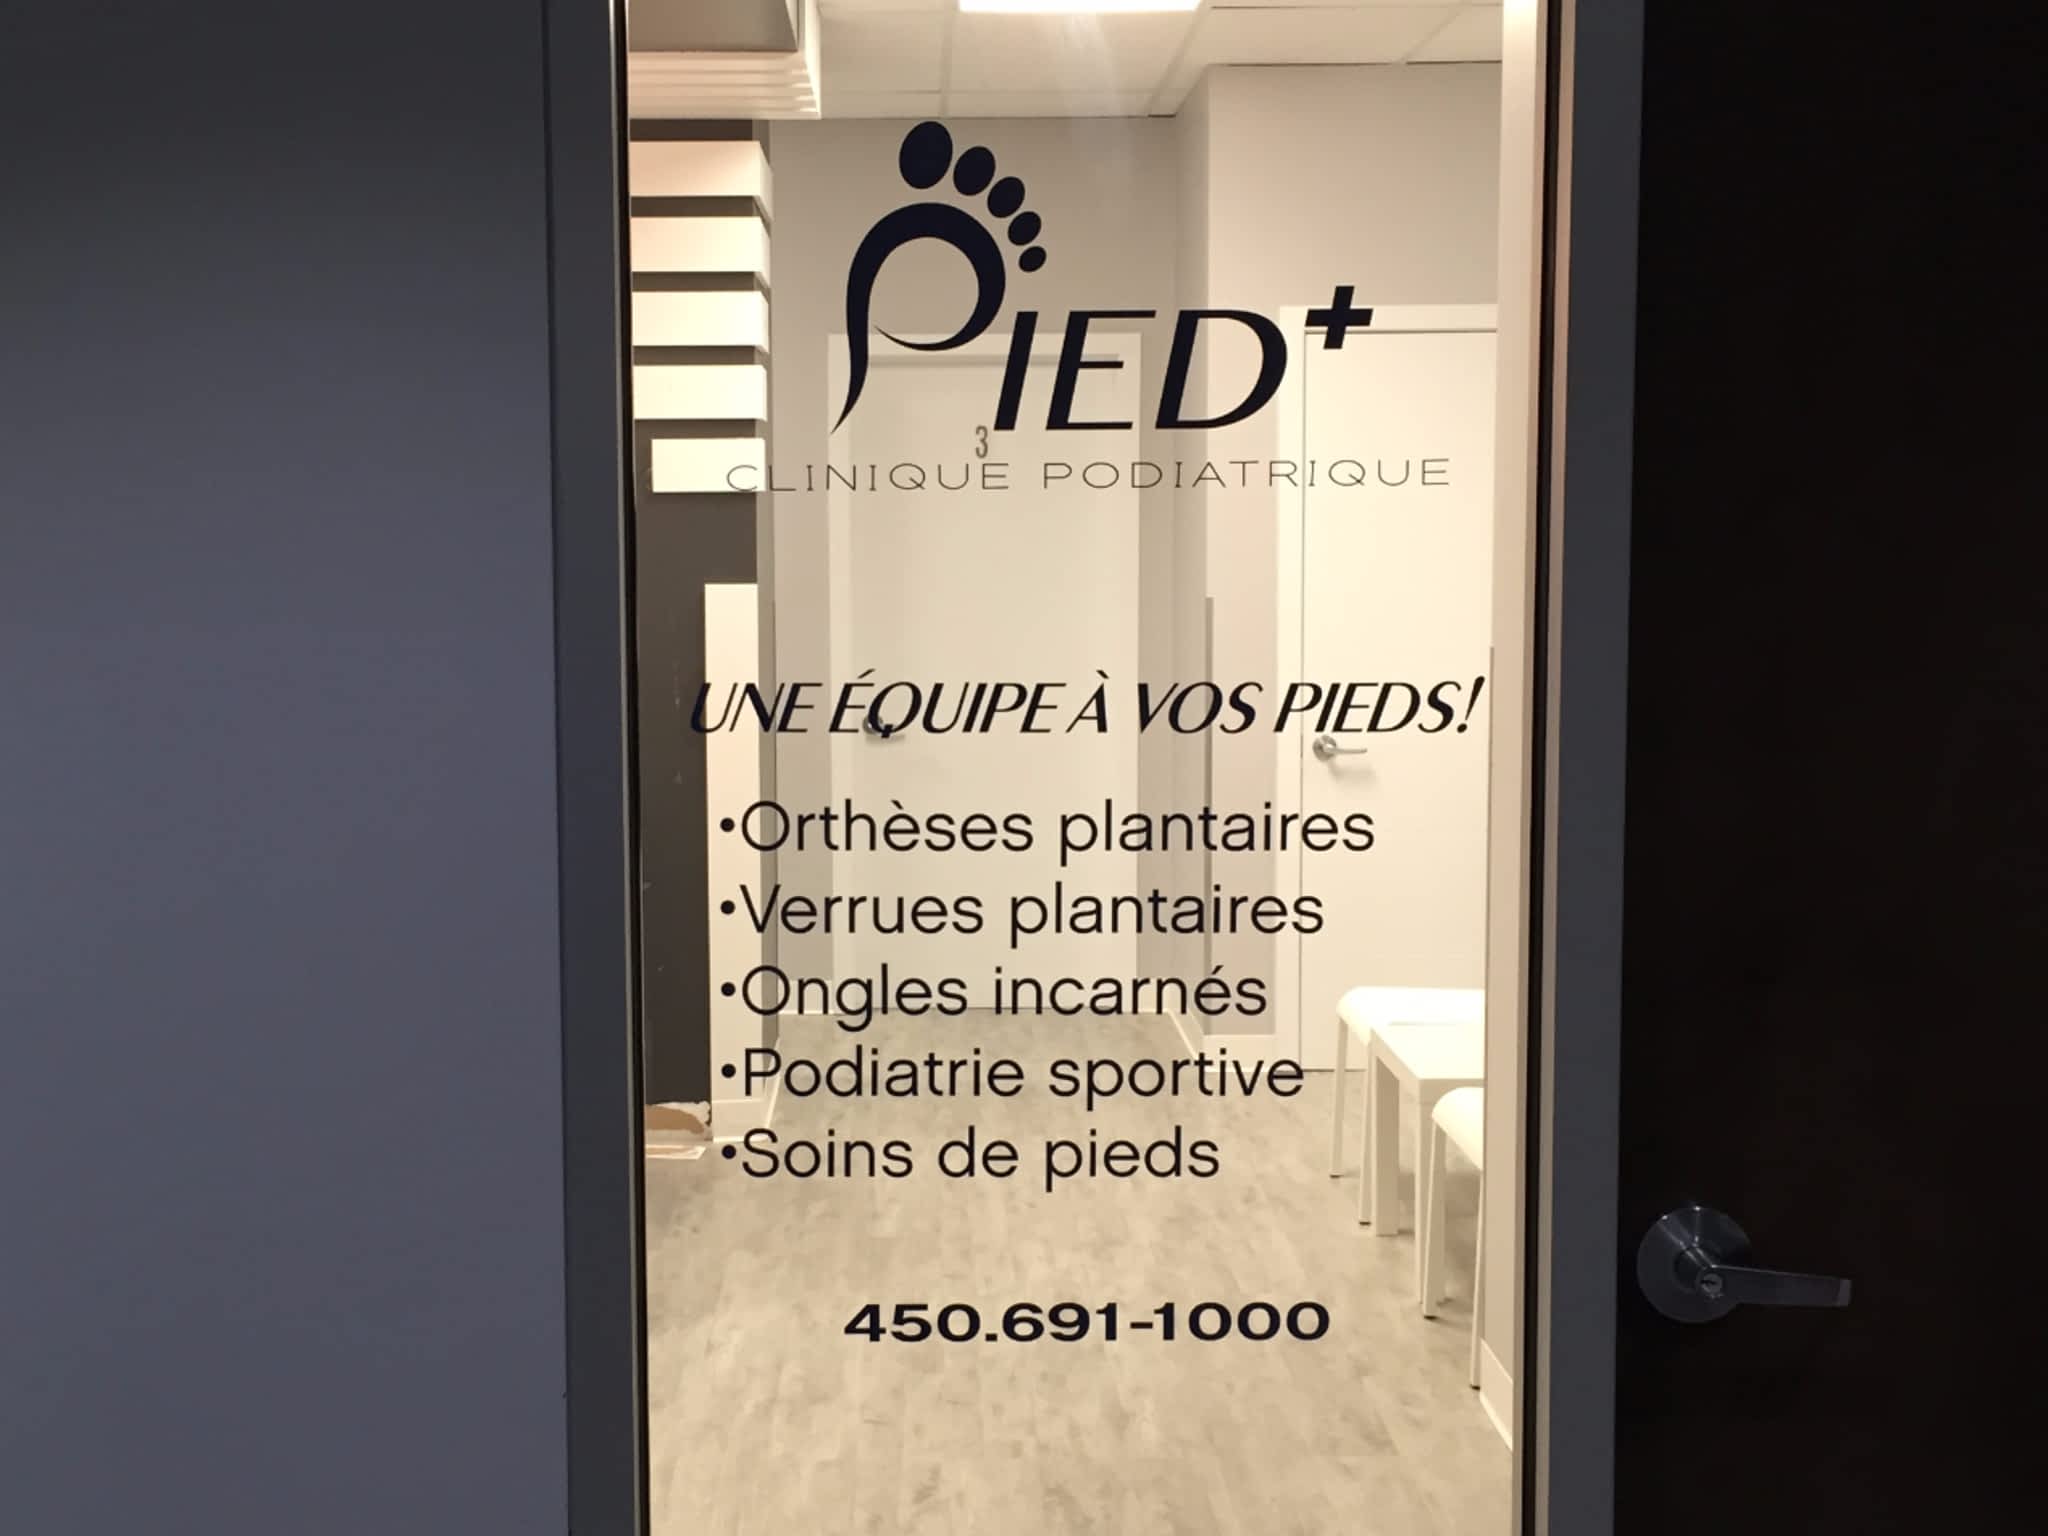 photo Clinique Podiatrique Pied+